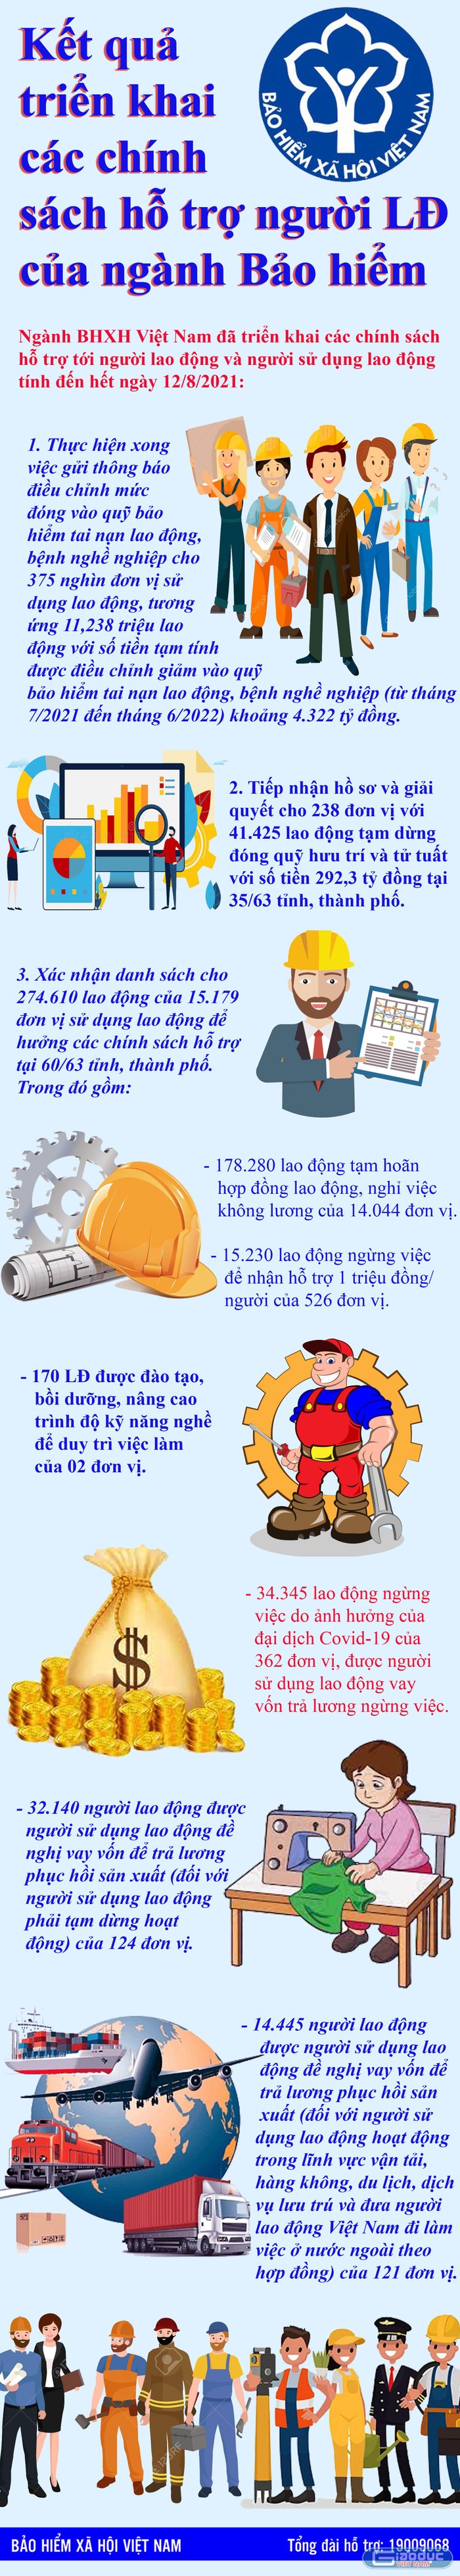 Bảo hiểm xã hội Việt Nam với kết quả triển khai các chính sách hỗ trợ người lao động. Infographic: Tùng Dương.